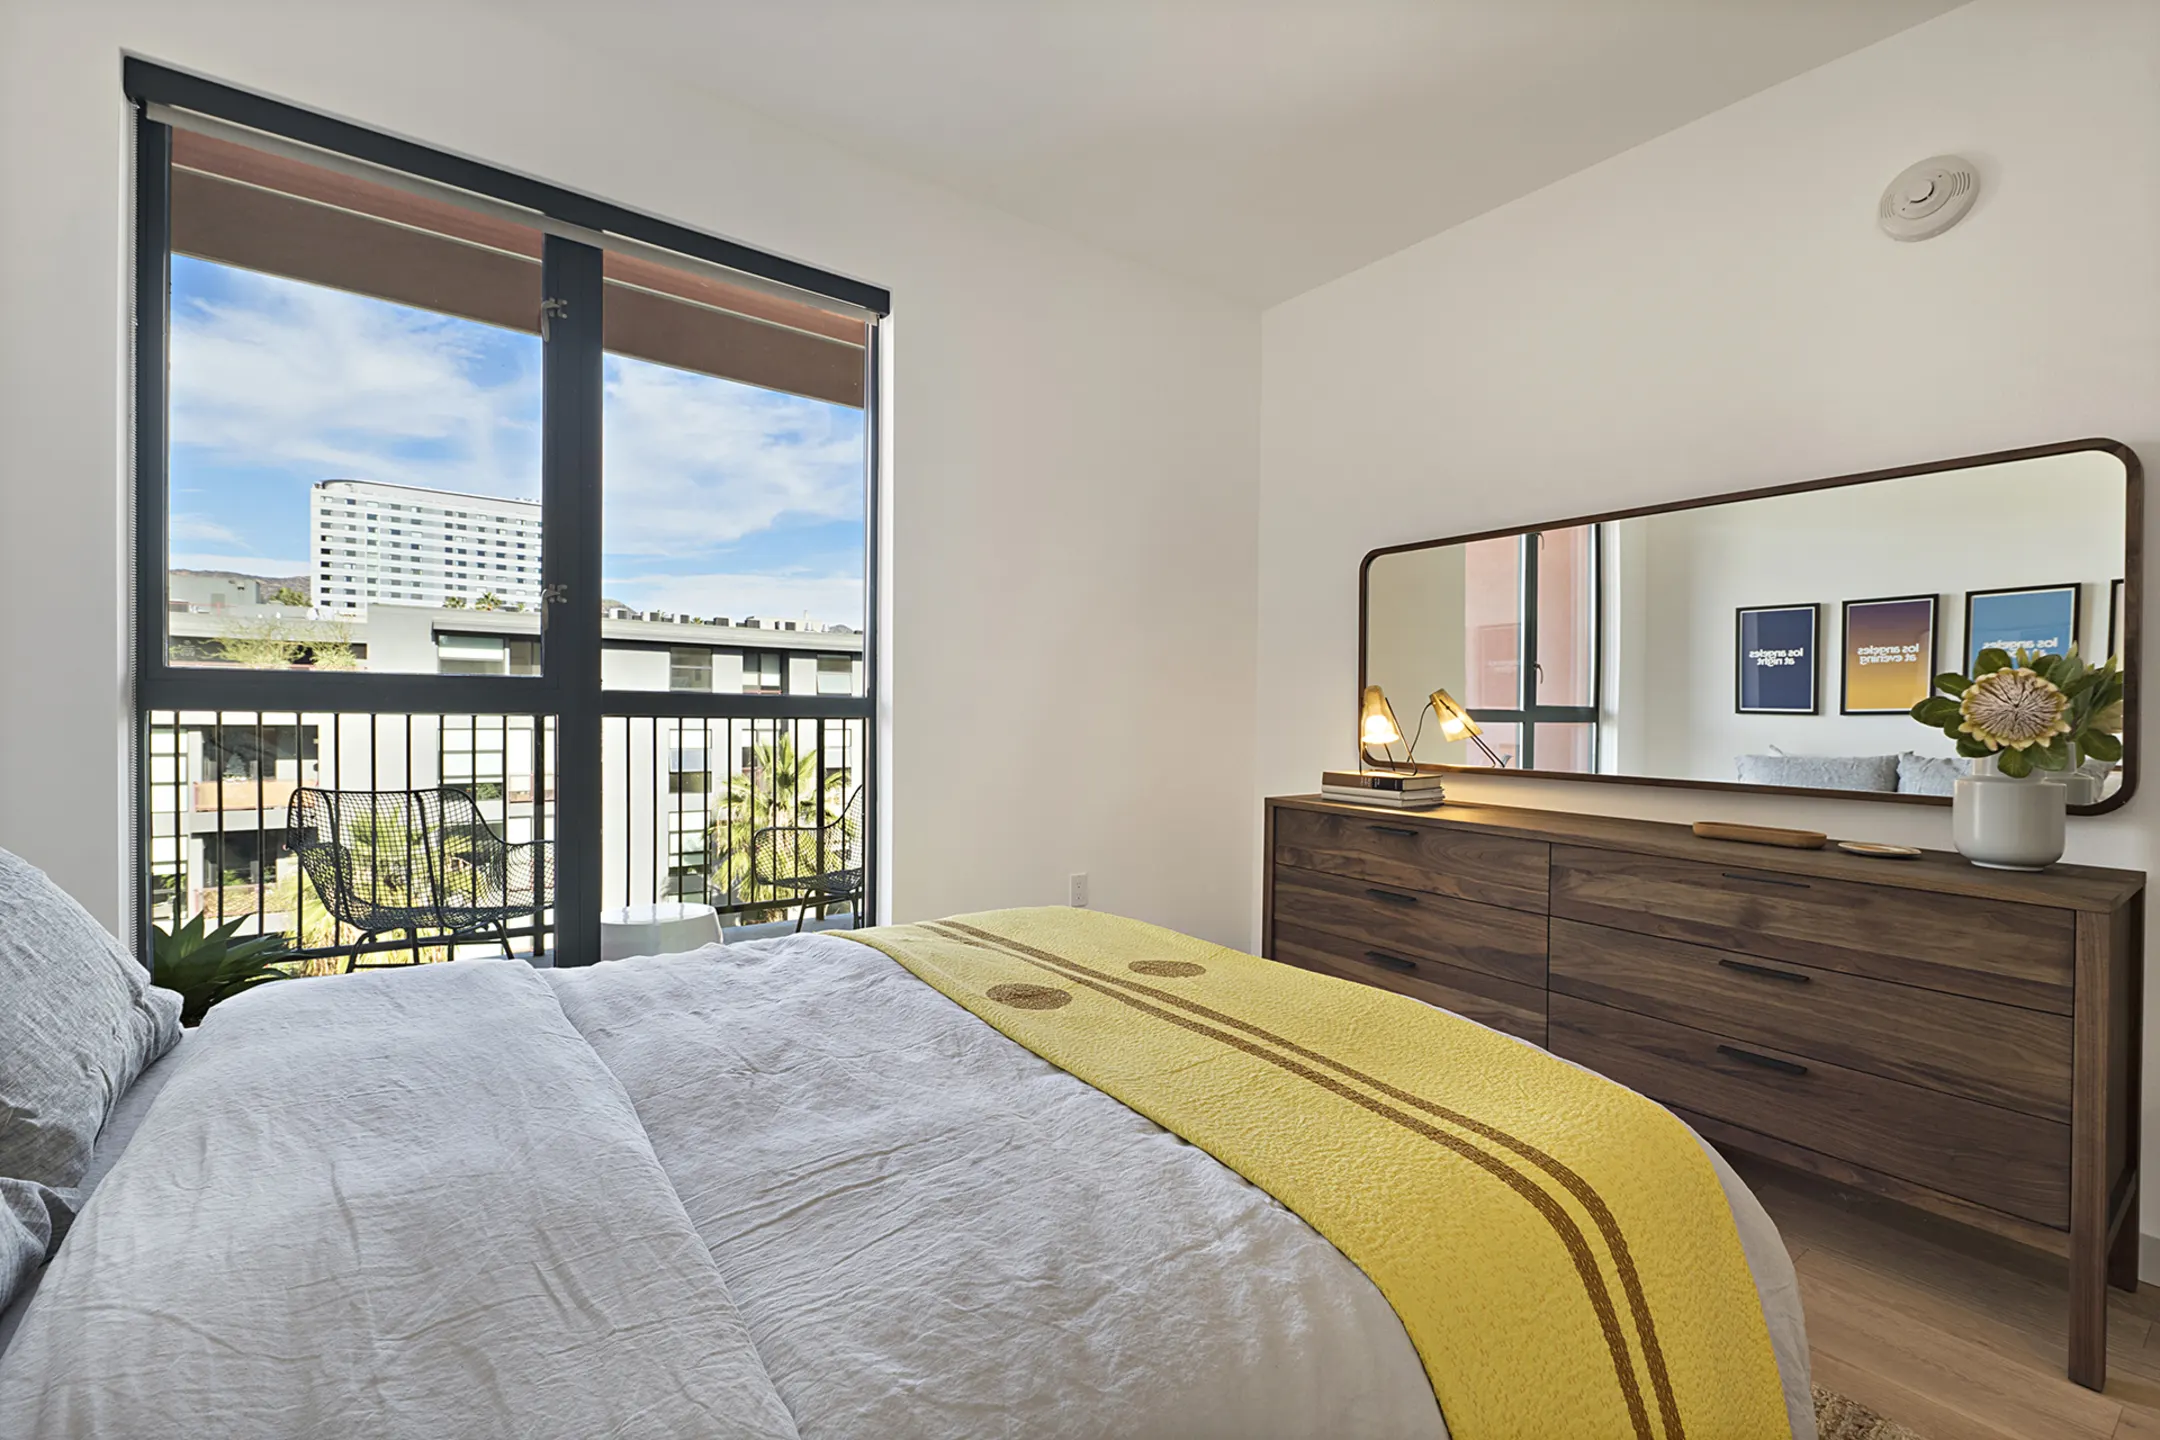 Bedroom - El Centro Apartments & Bungalows - Los Angeles, CA